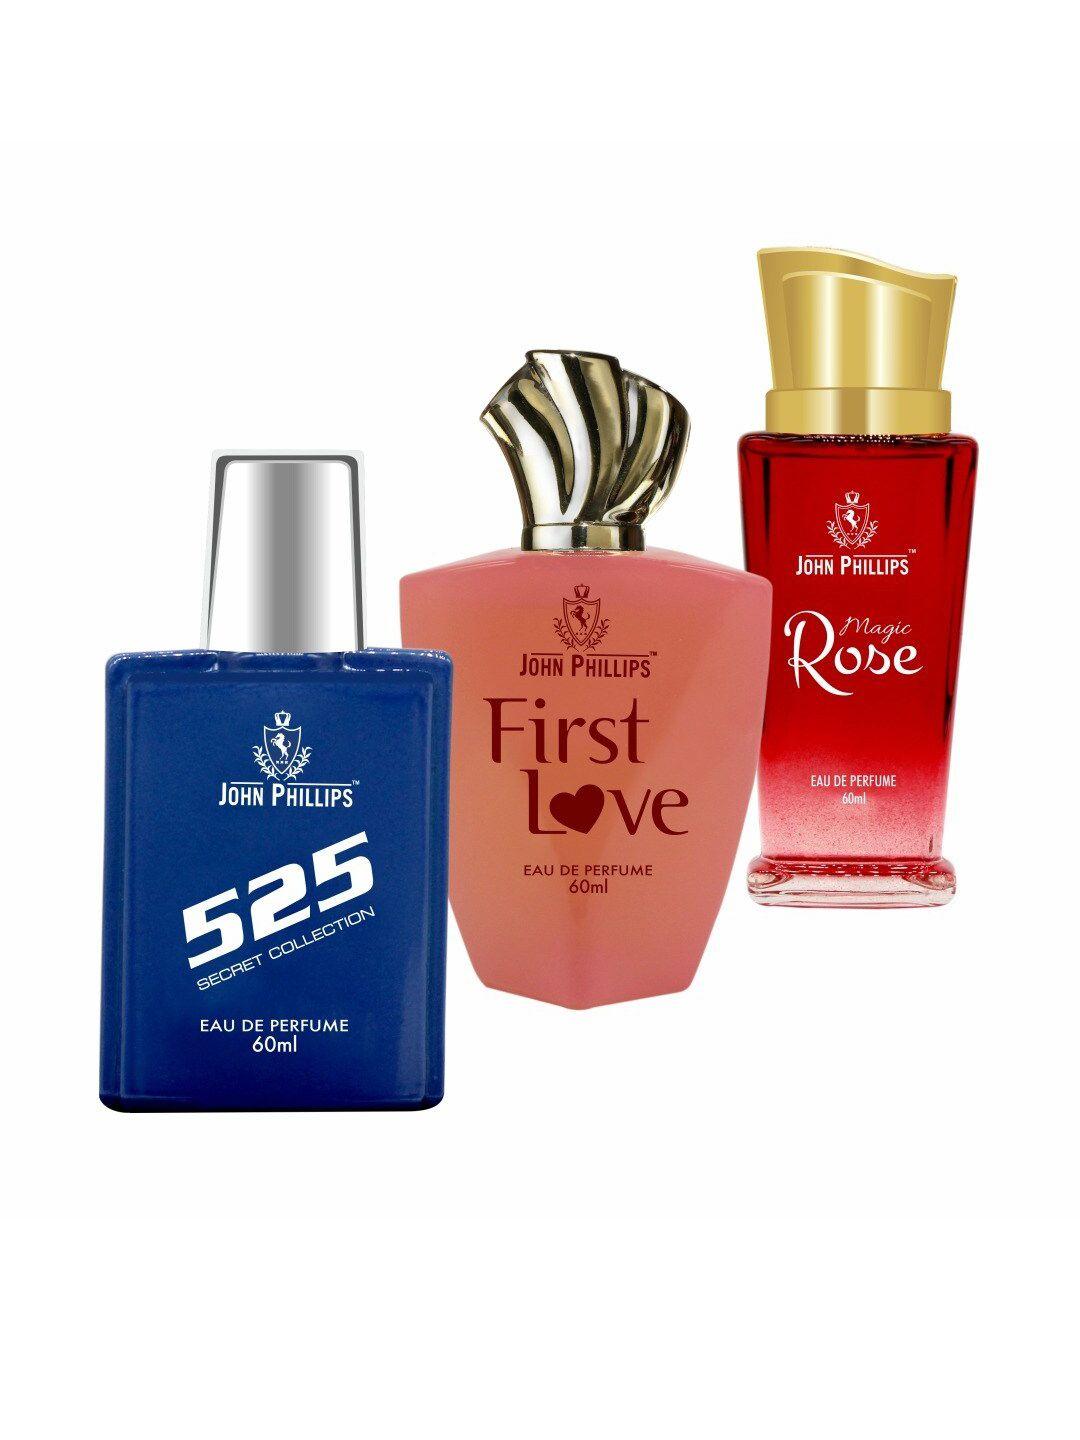 john phillips set of 3 eau de parfum - 525 + first love + magic rose - 60ml each